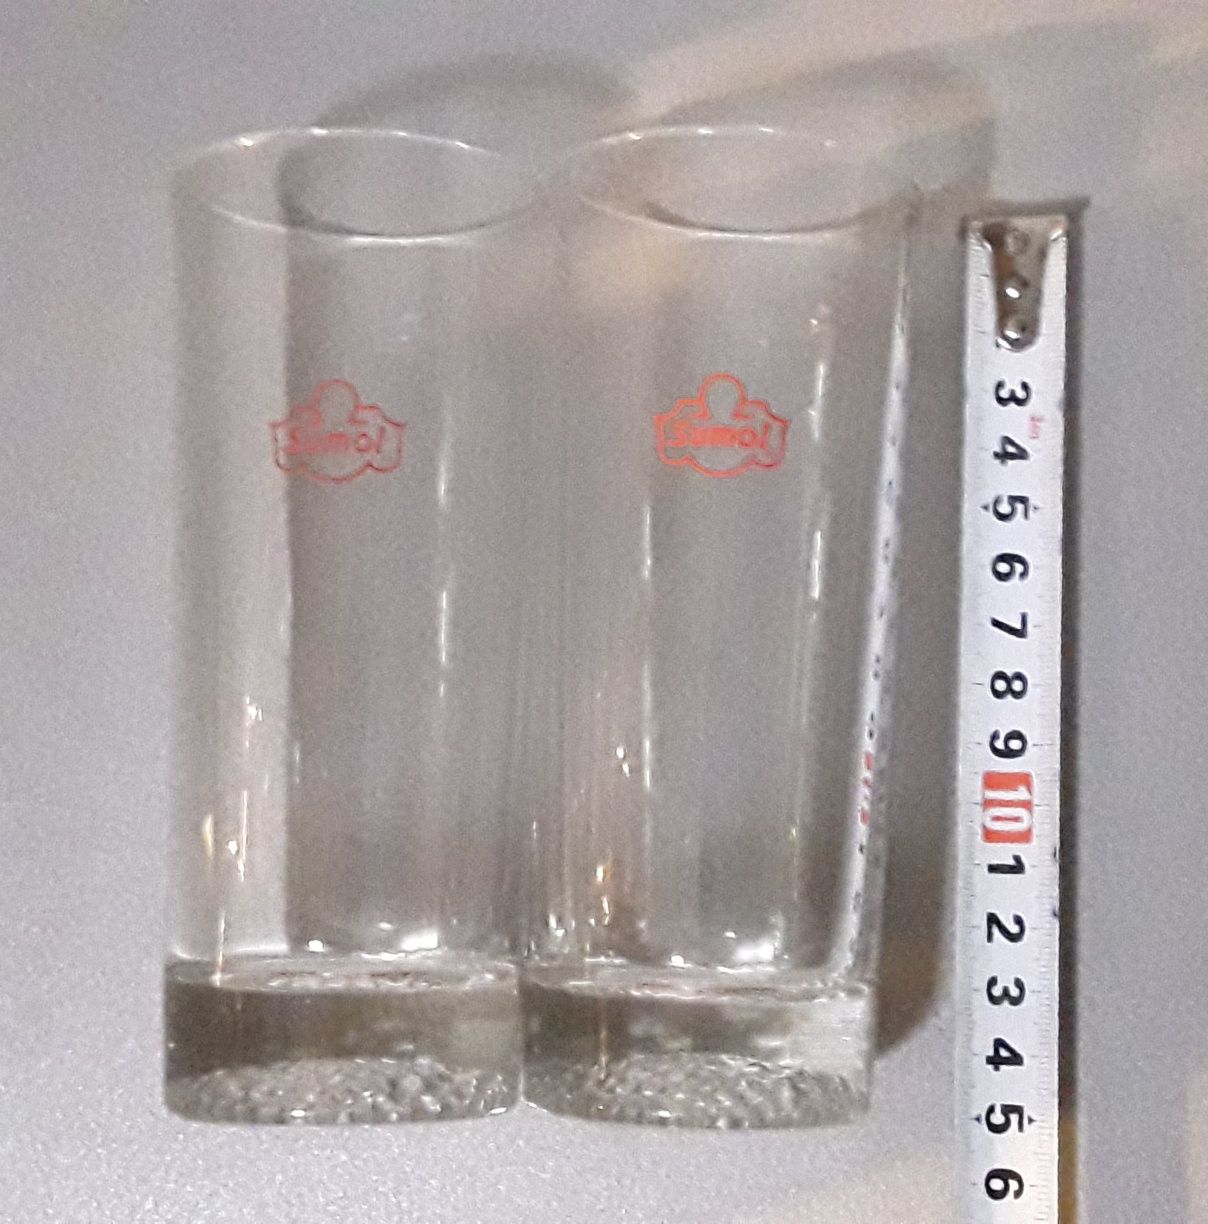 2 copos de vidro SUMOL (vintage)